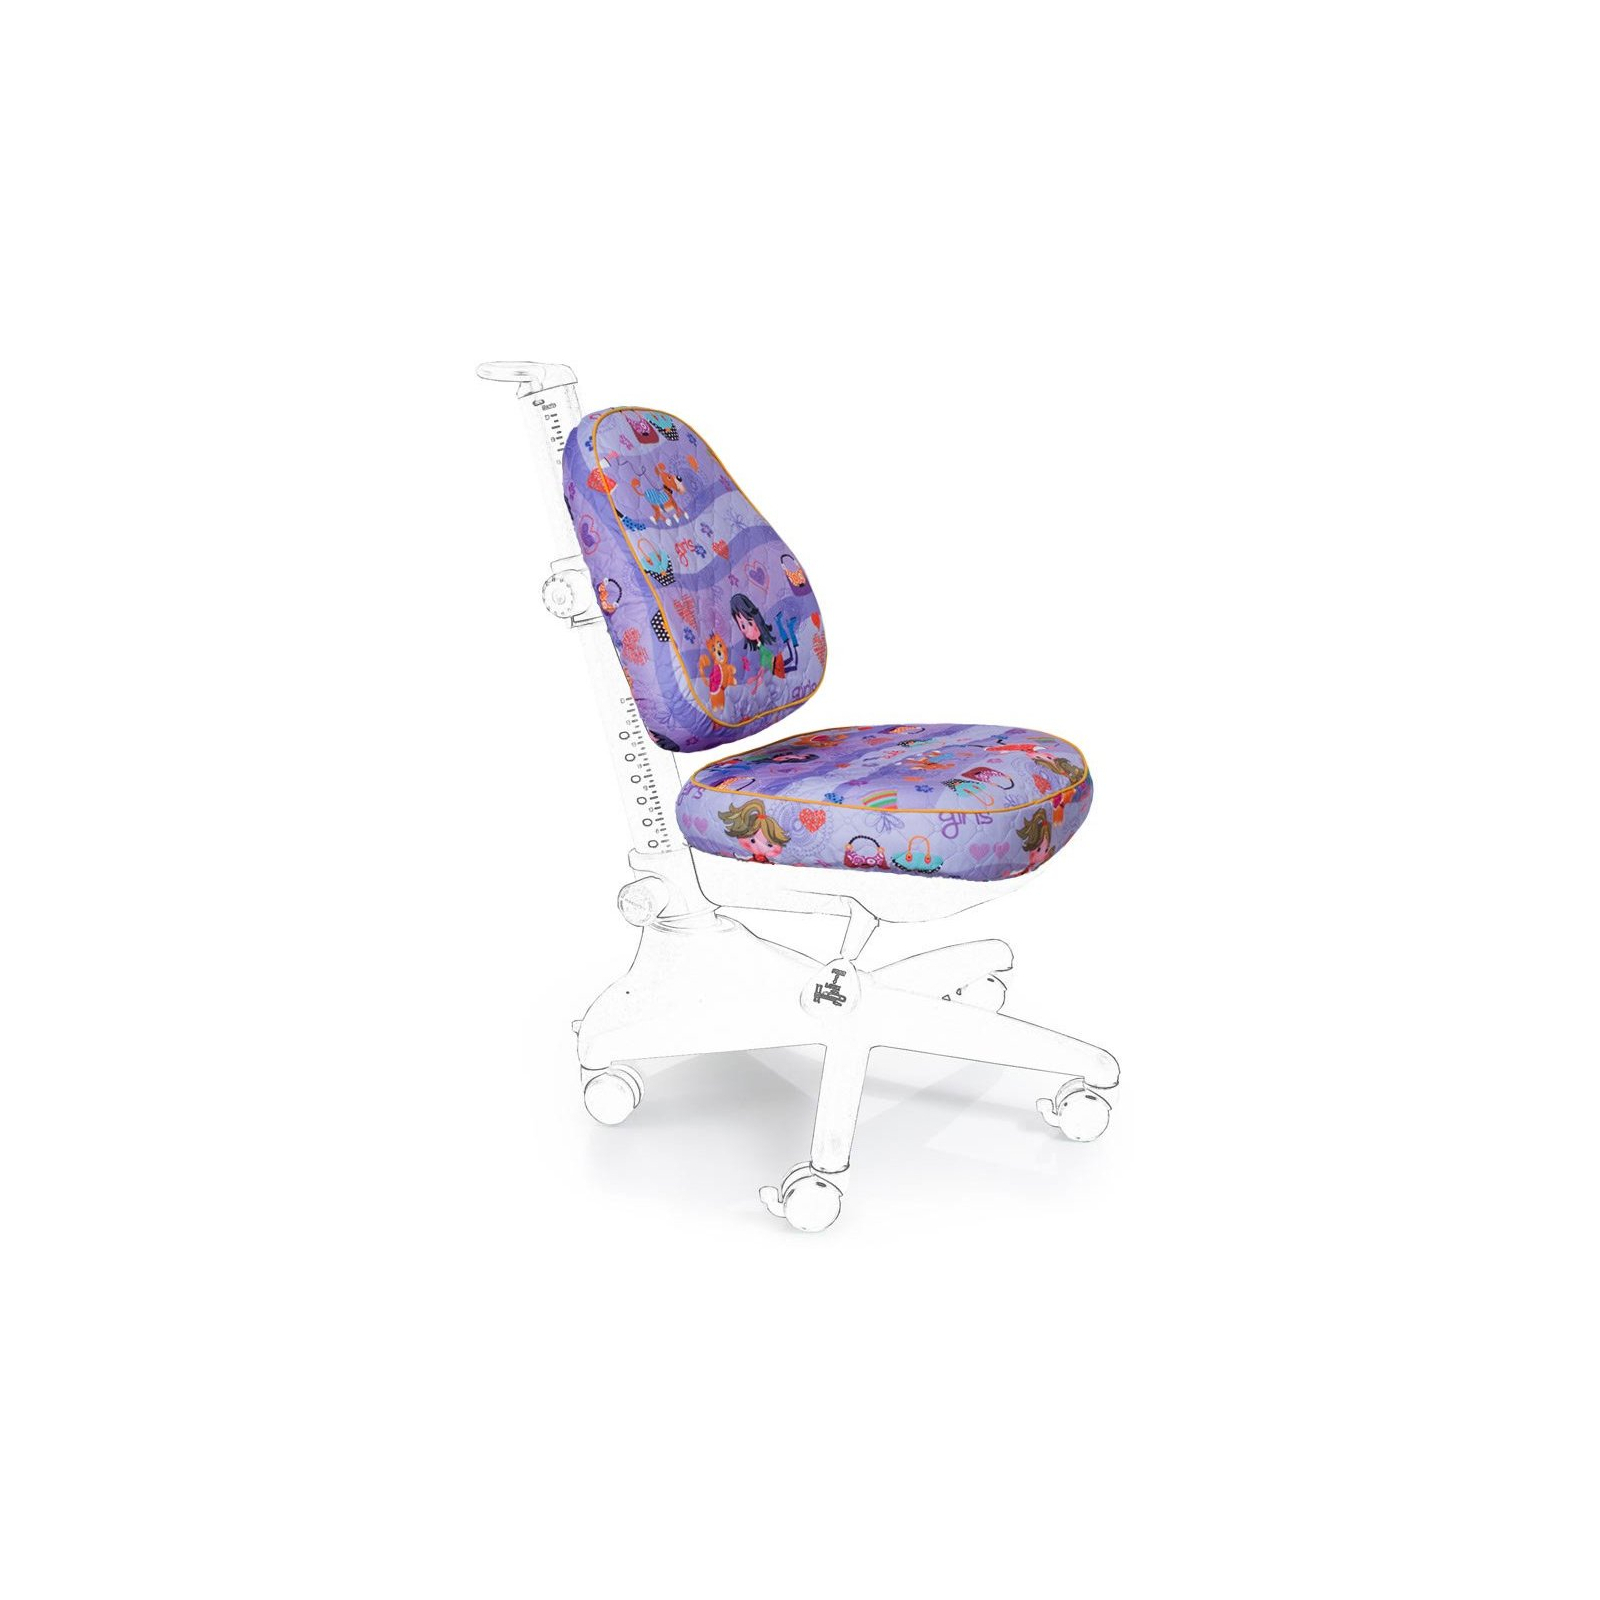 Чехол для кресла Mealux Conan фиолетовый с девочками (Чехол GL (S) (Y-317))